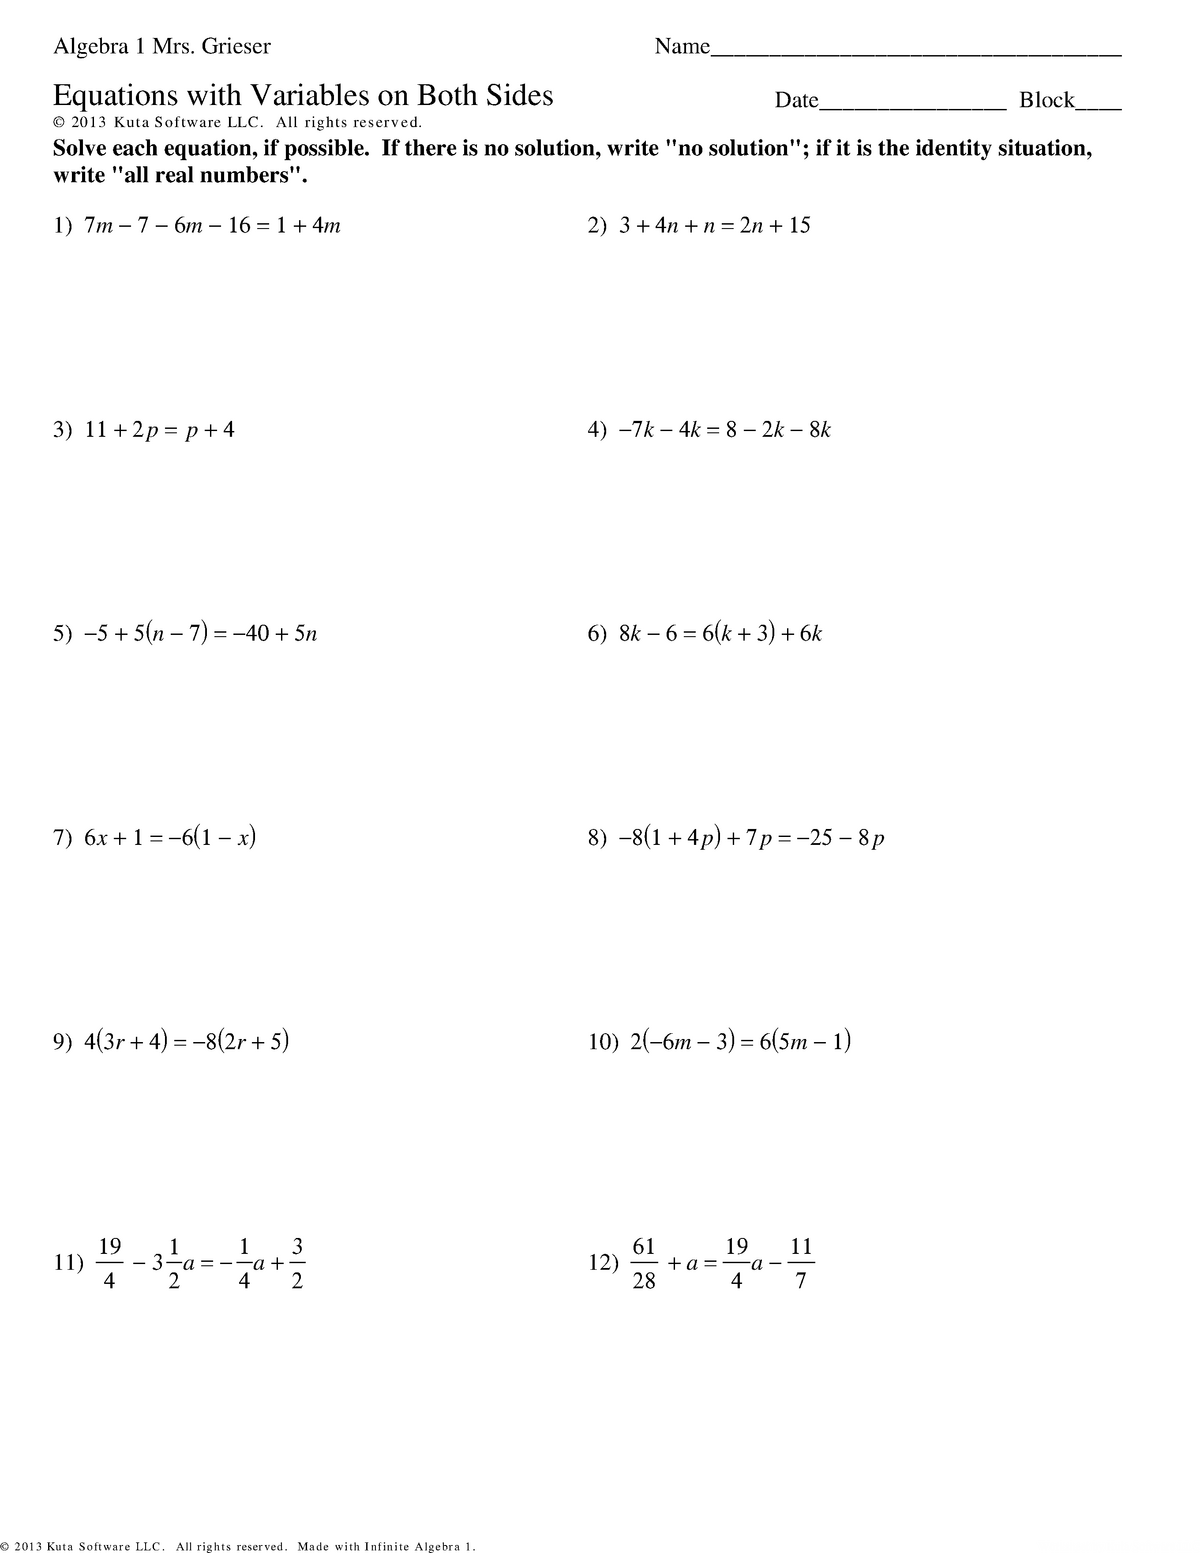 kuta-equations-with-variables-on-both-sides-math-2-saddleback-studocu